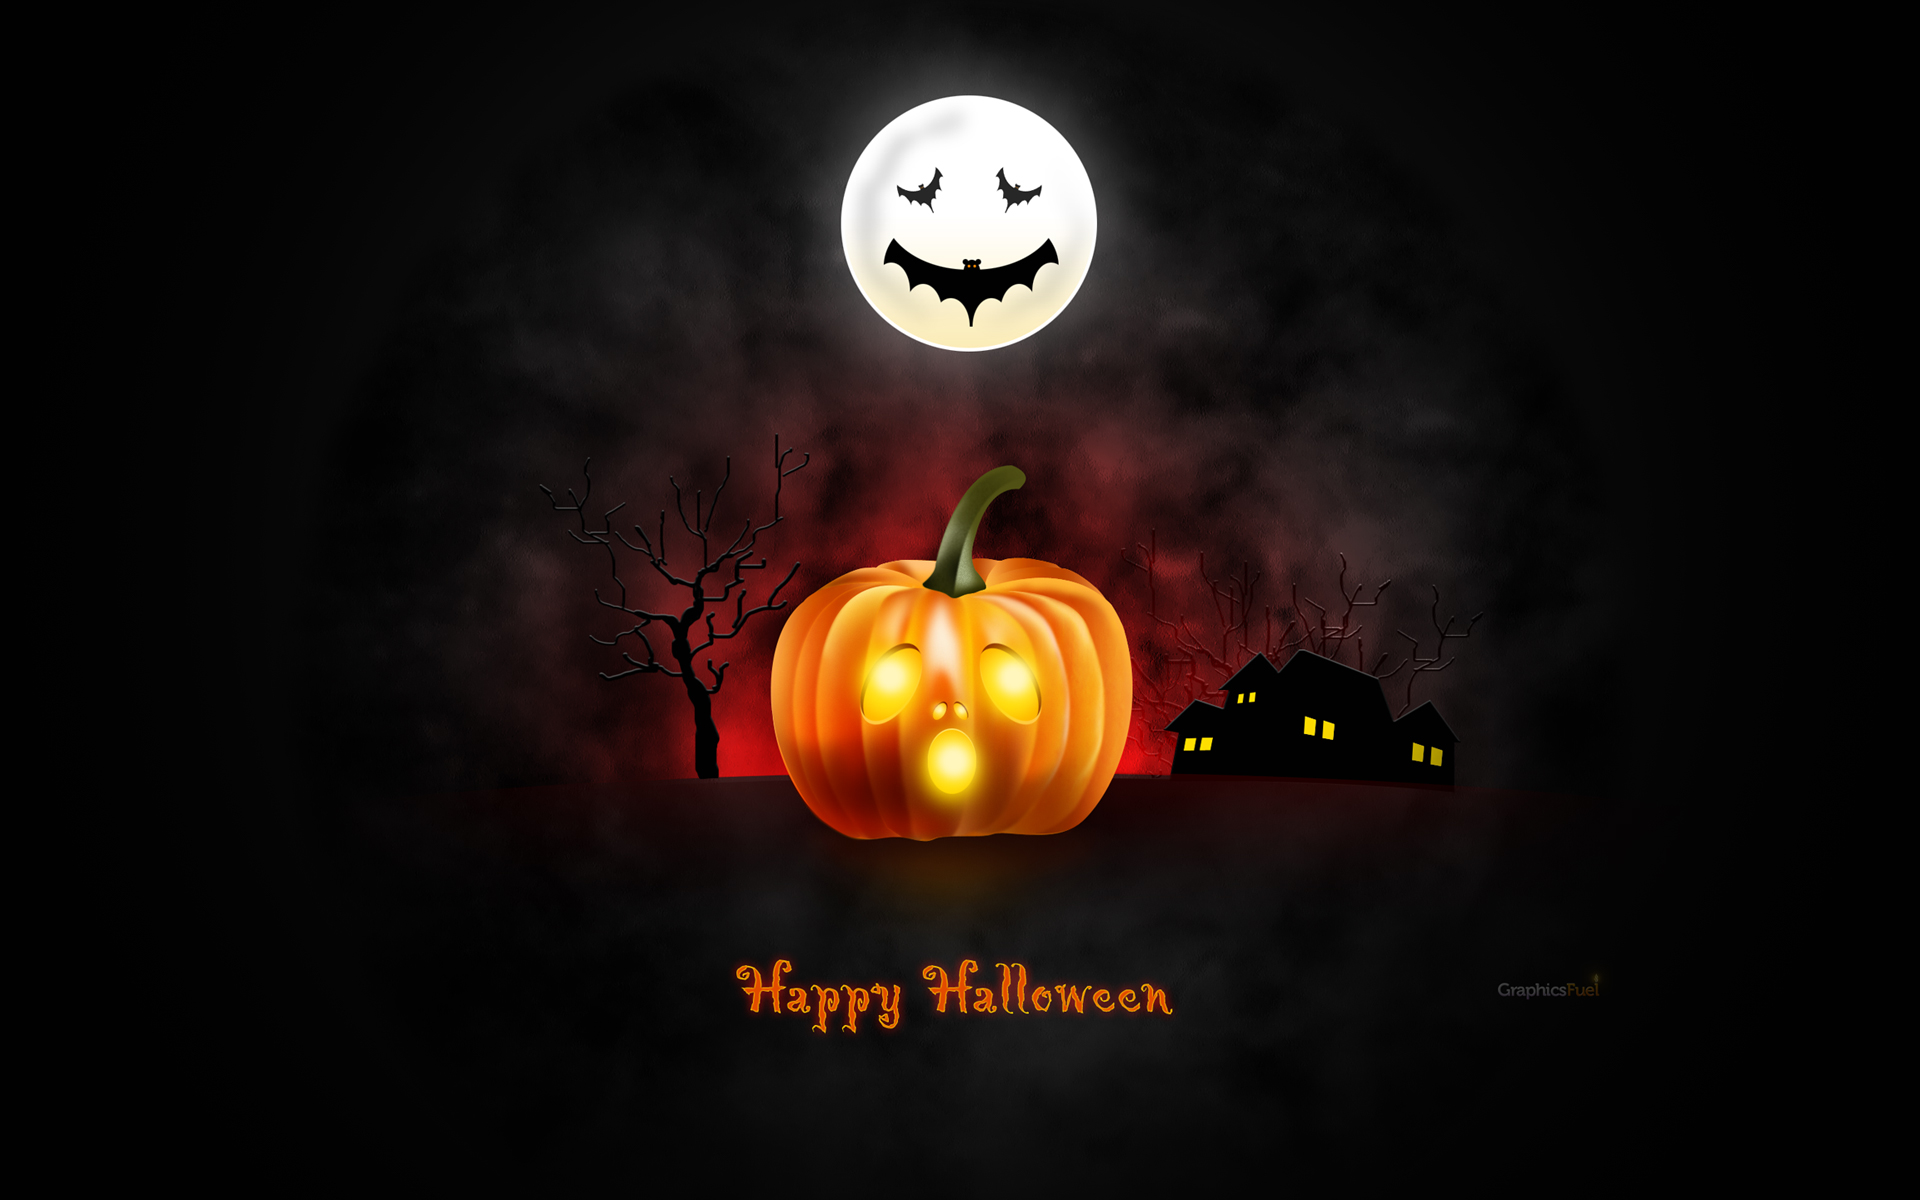 Halloween wallpaper for desktop, iPad & iPhone (PSD ...